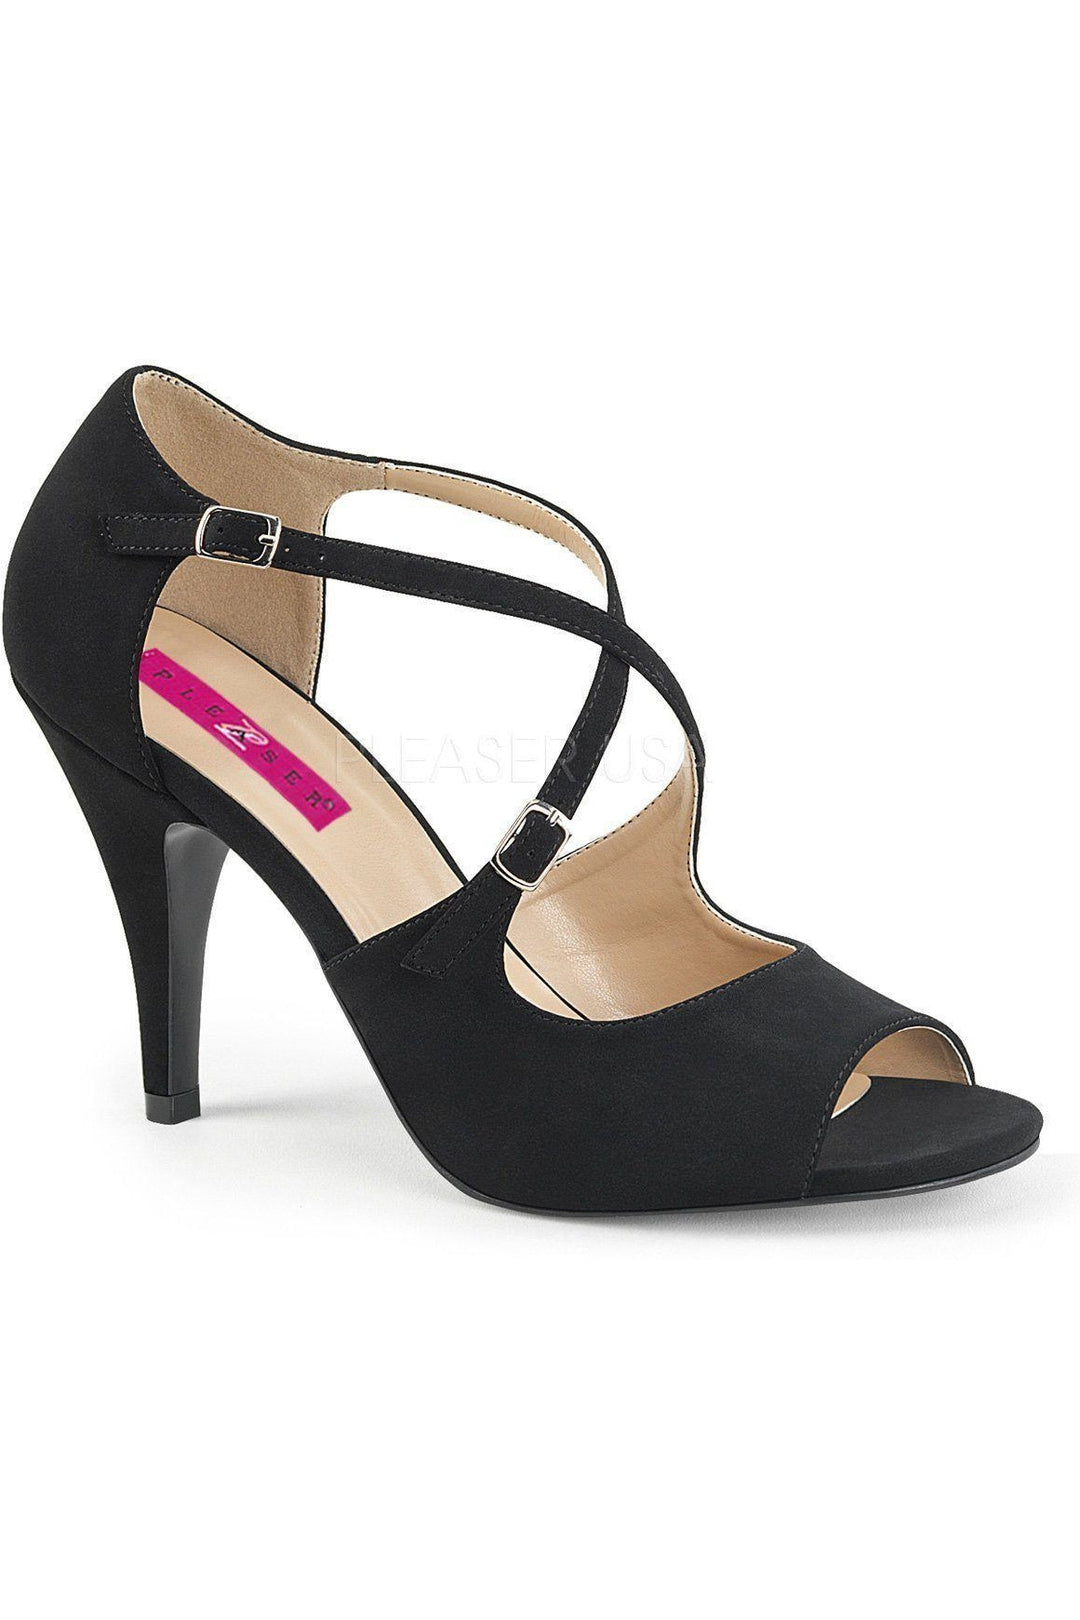 DREAM-412 Sandal | Black Faux Leather-Pleaser Pink Label-Black-Sandals-SEXYSHOES.COM